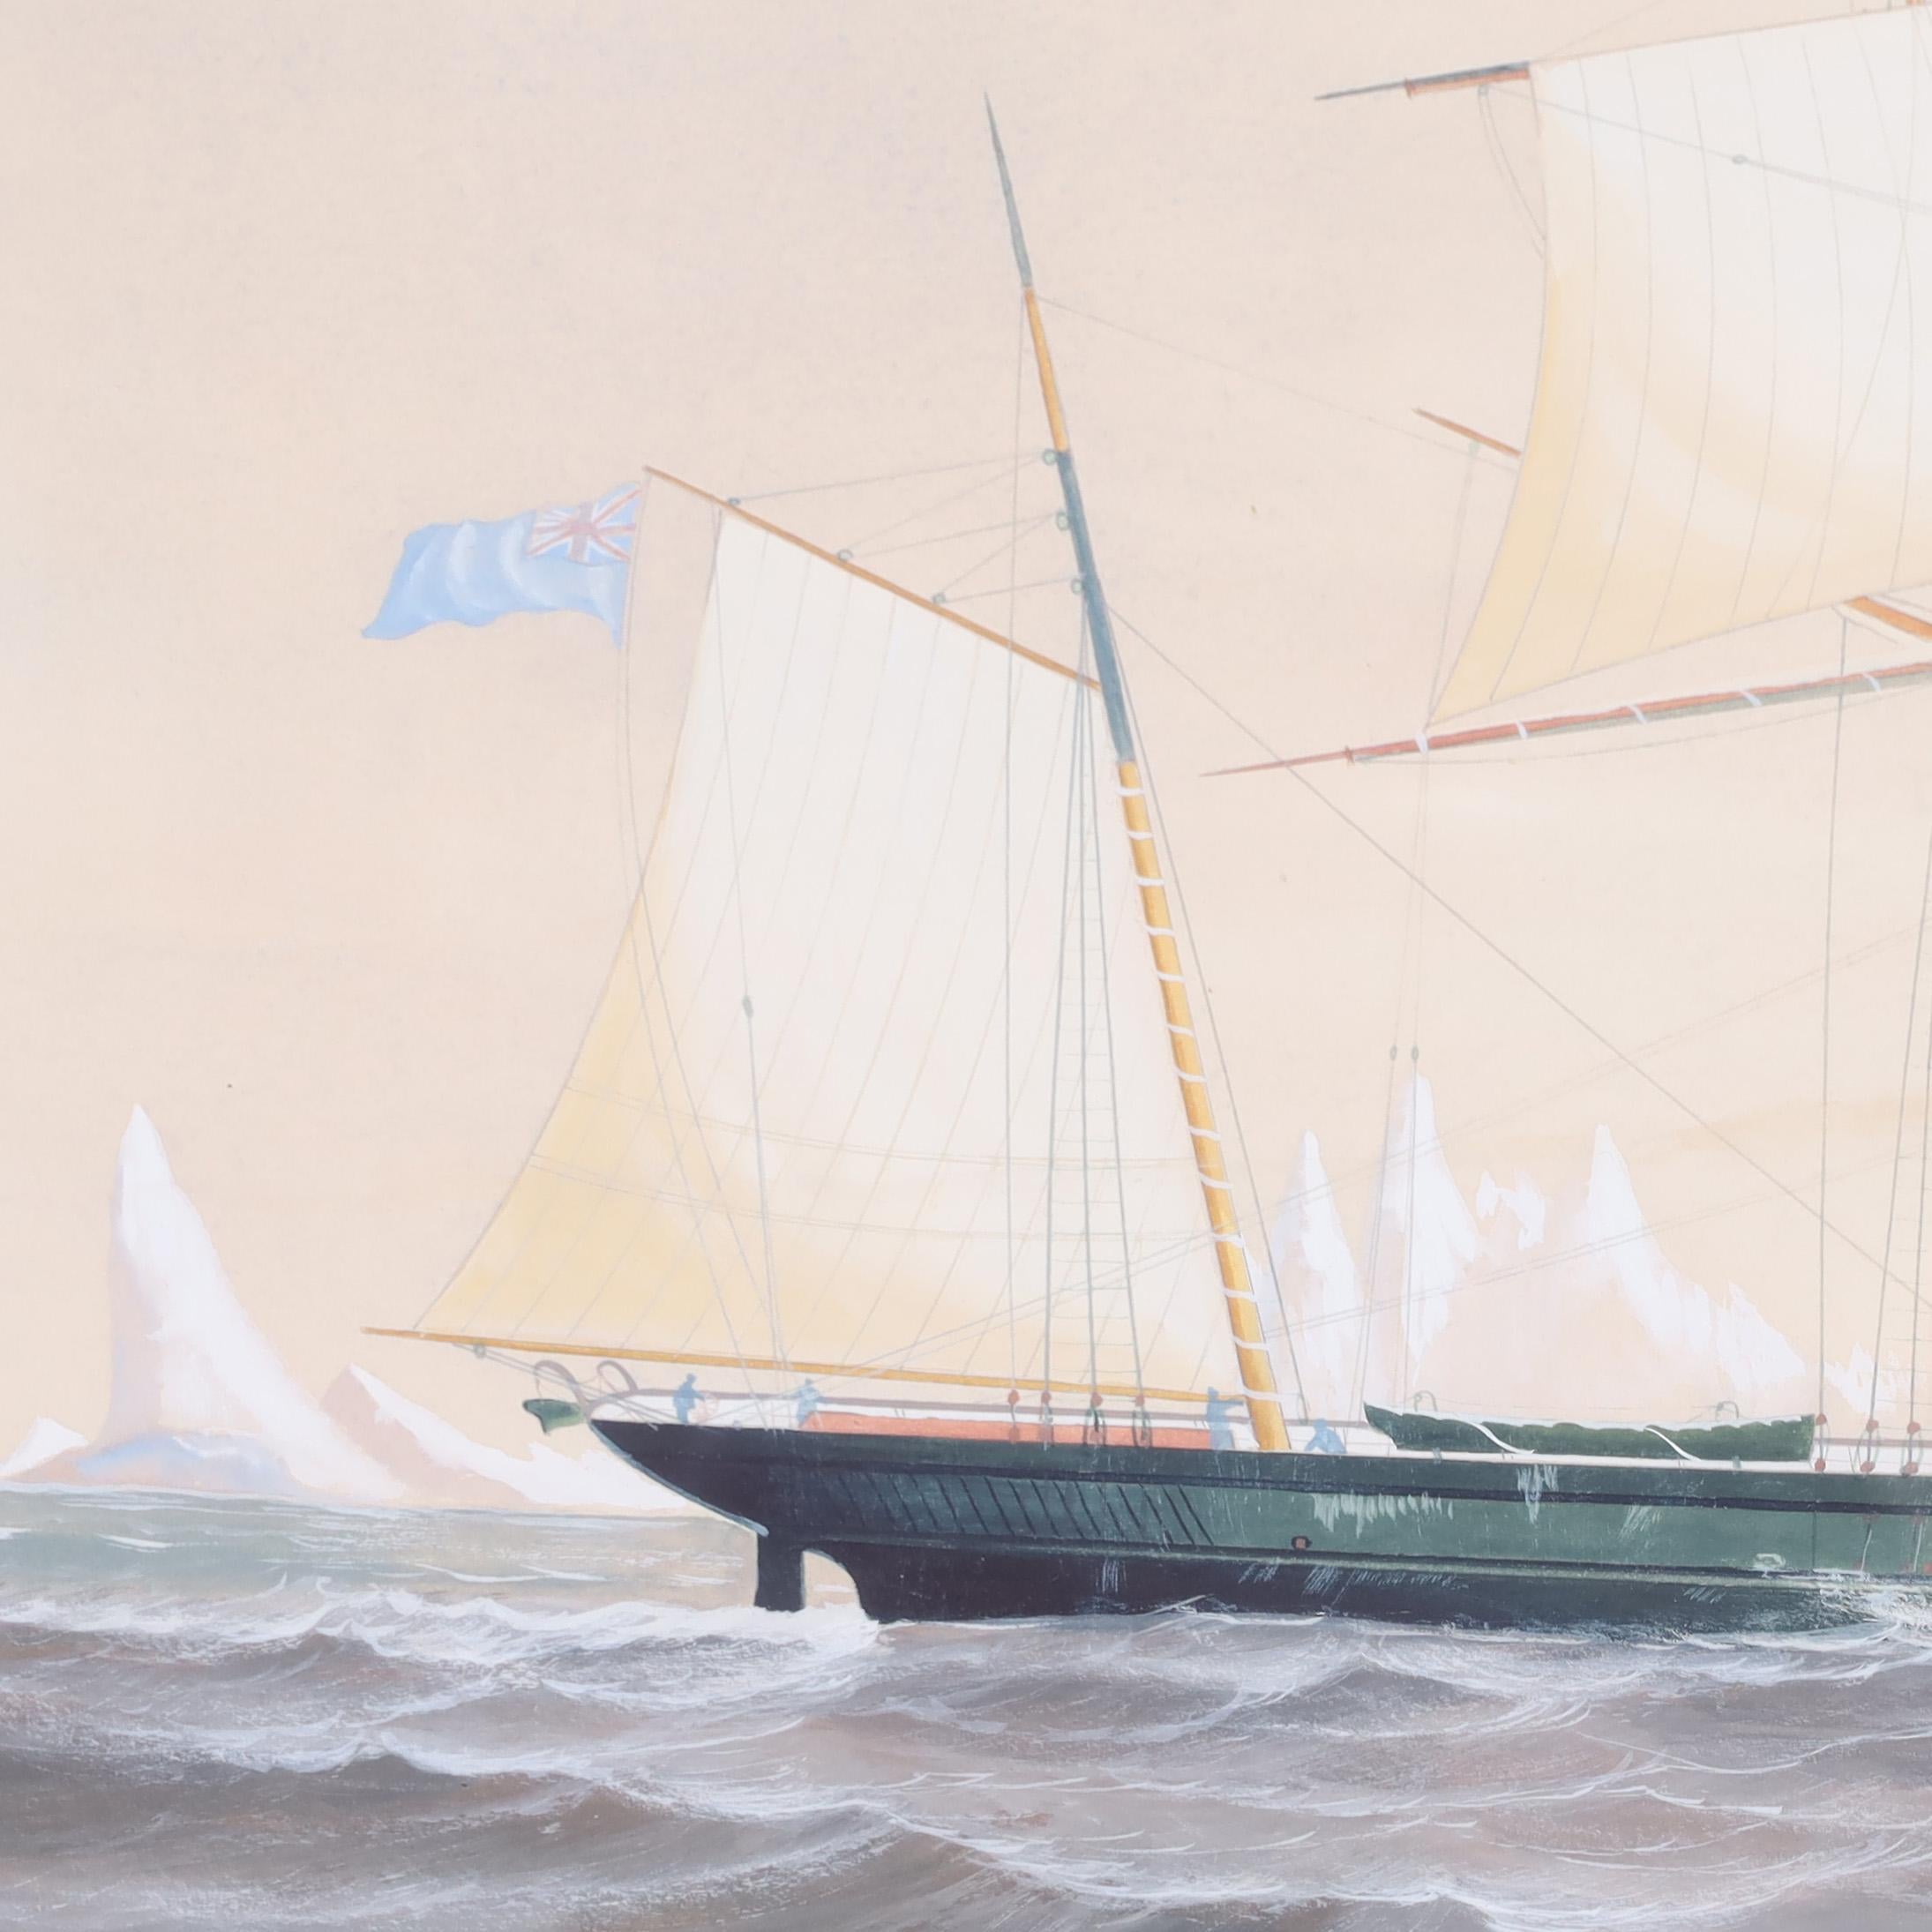 En 1845, l'officier britannique Sir John Franklin et son équipage disparaissent lors d'une exploration de l'Arctique. Le capitaine Francis Leopald McClintock a été chargé d'explorer cette disparition sur le yacht 